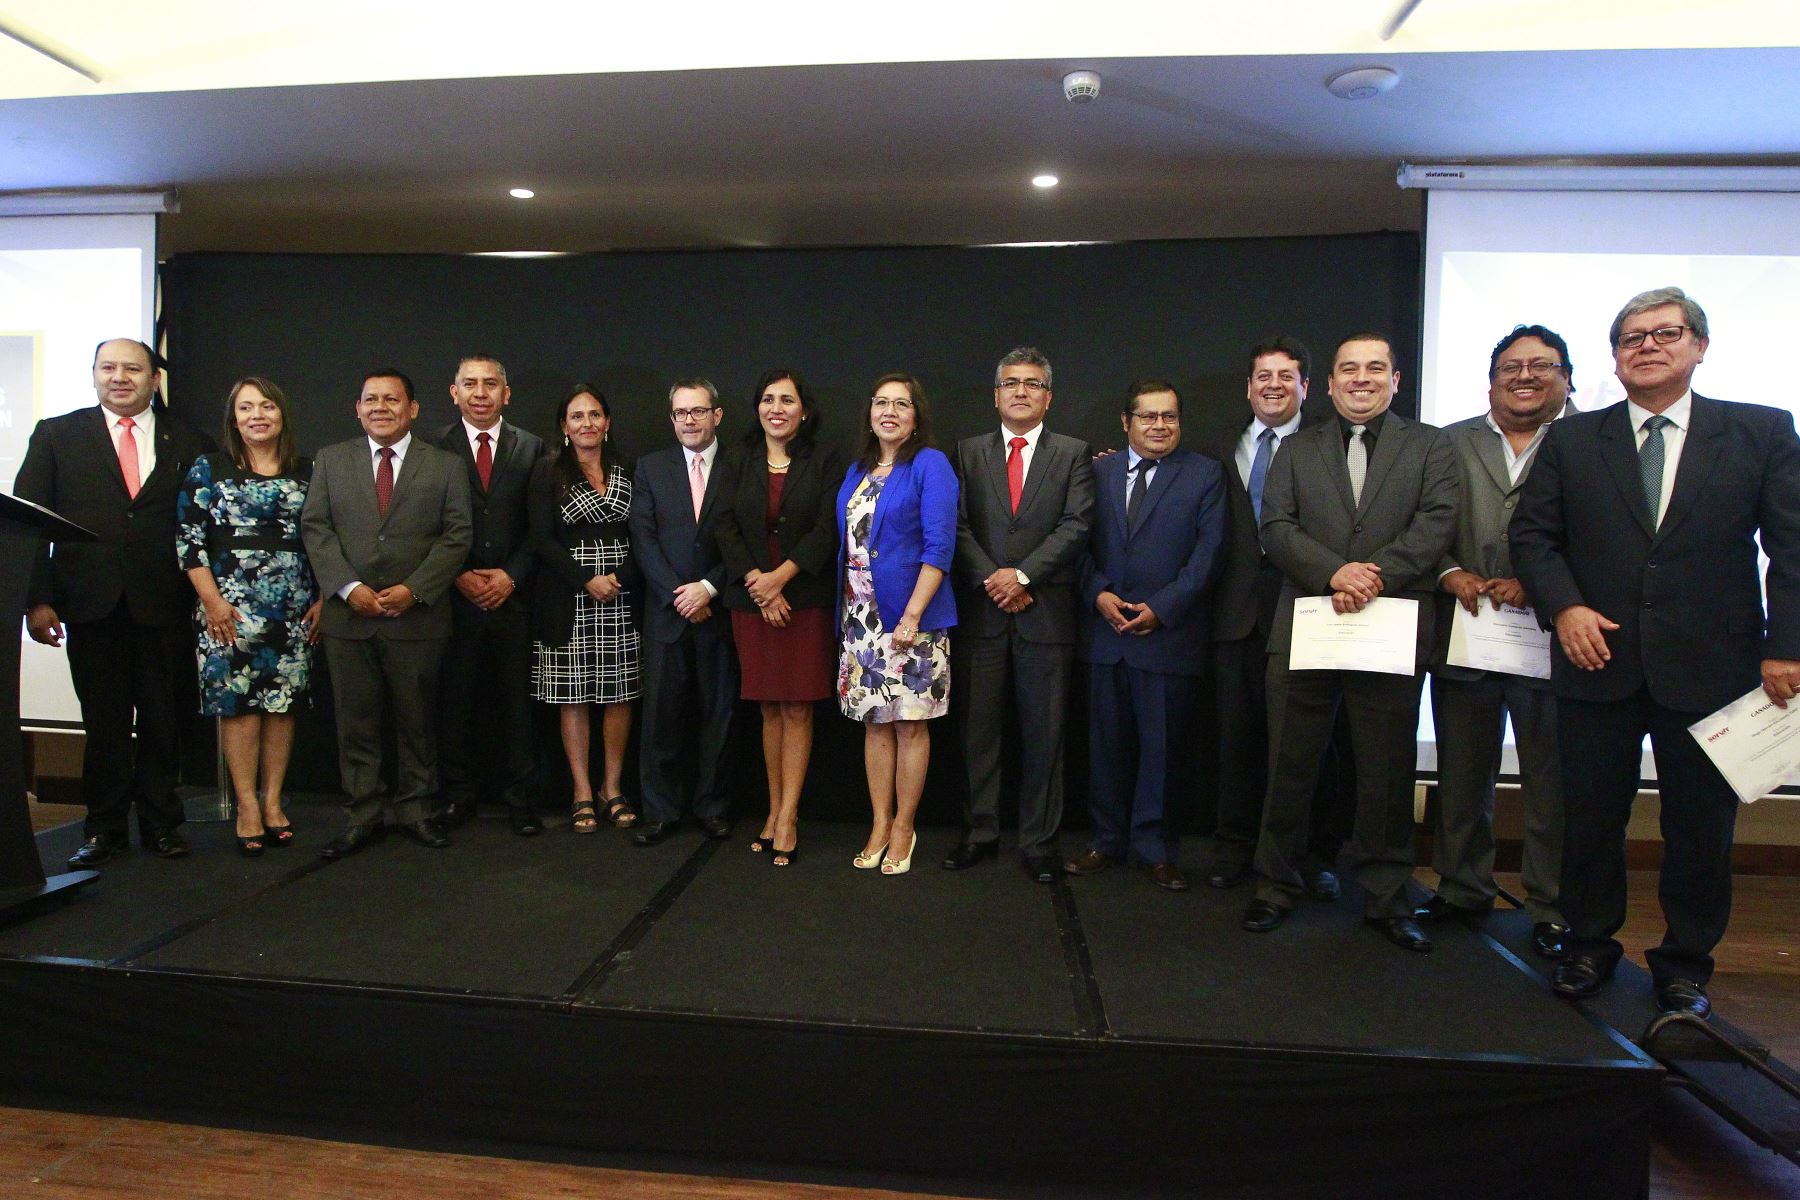 Los ganadores de las buenas prácticas junto con ministras de Estado. Foto: ANDINA/Eddy Ramos